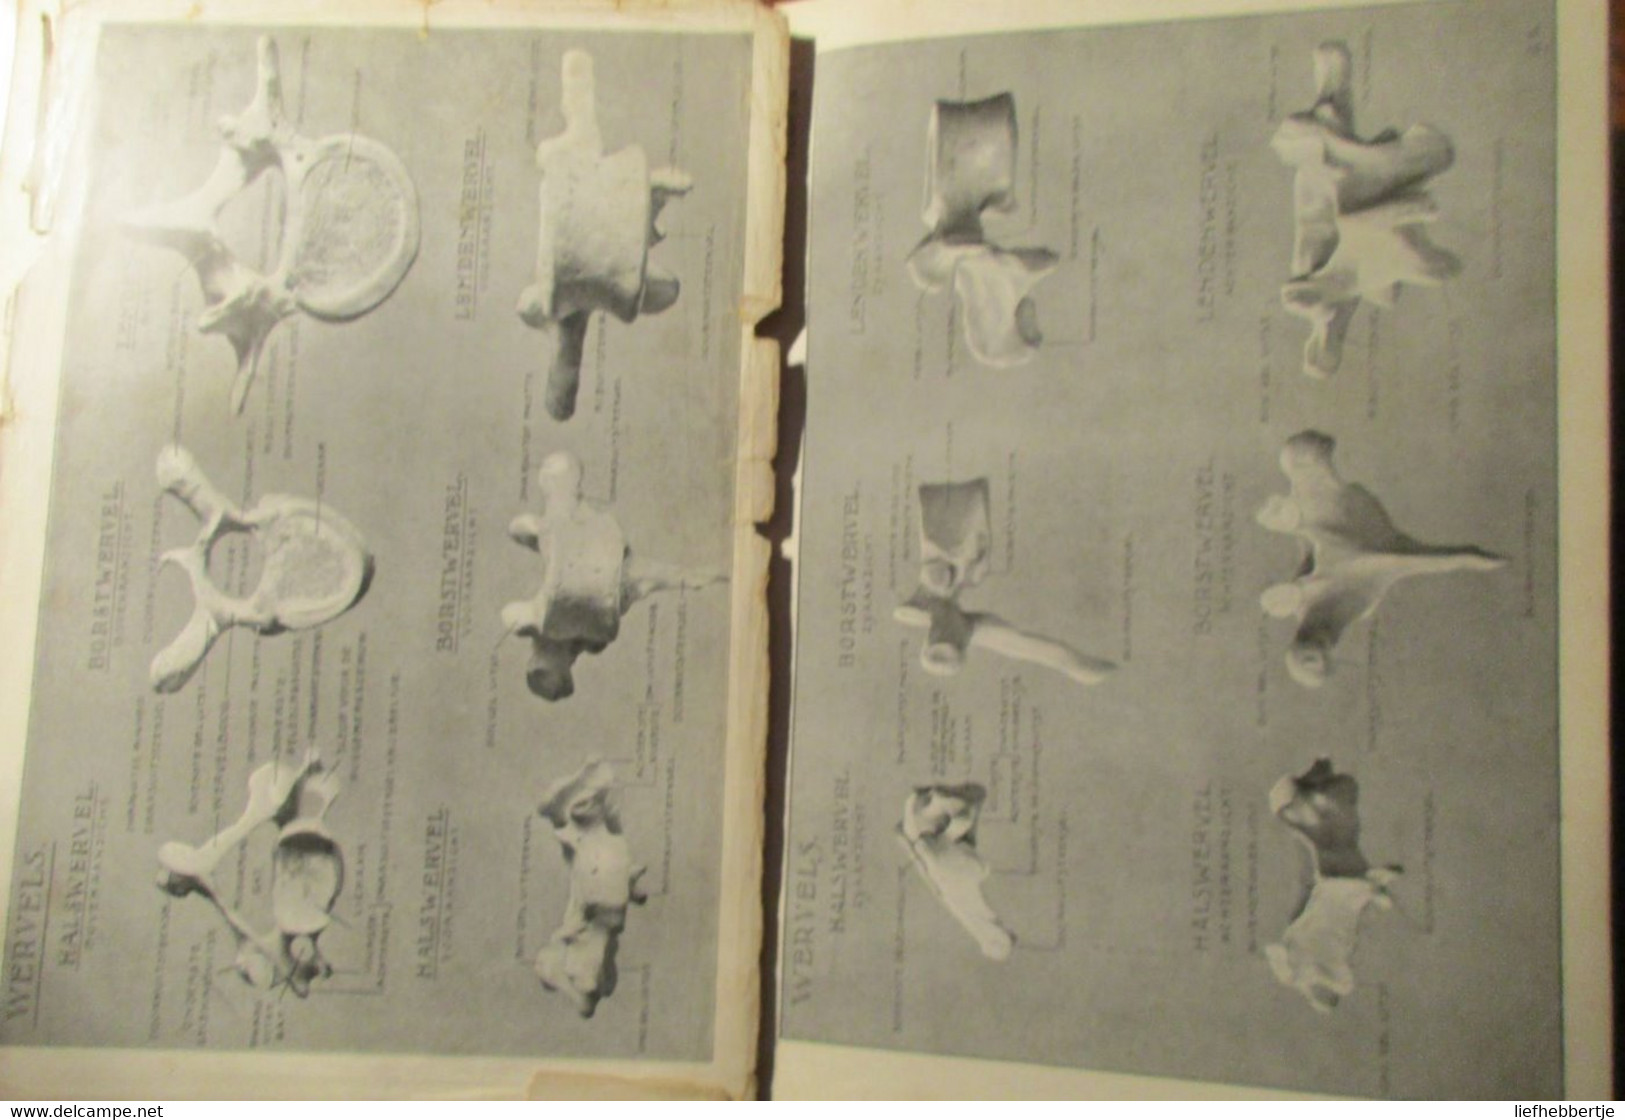 Anatomie voor kunstenaars - door J. Rykse - 1913